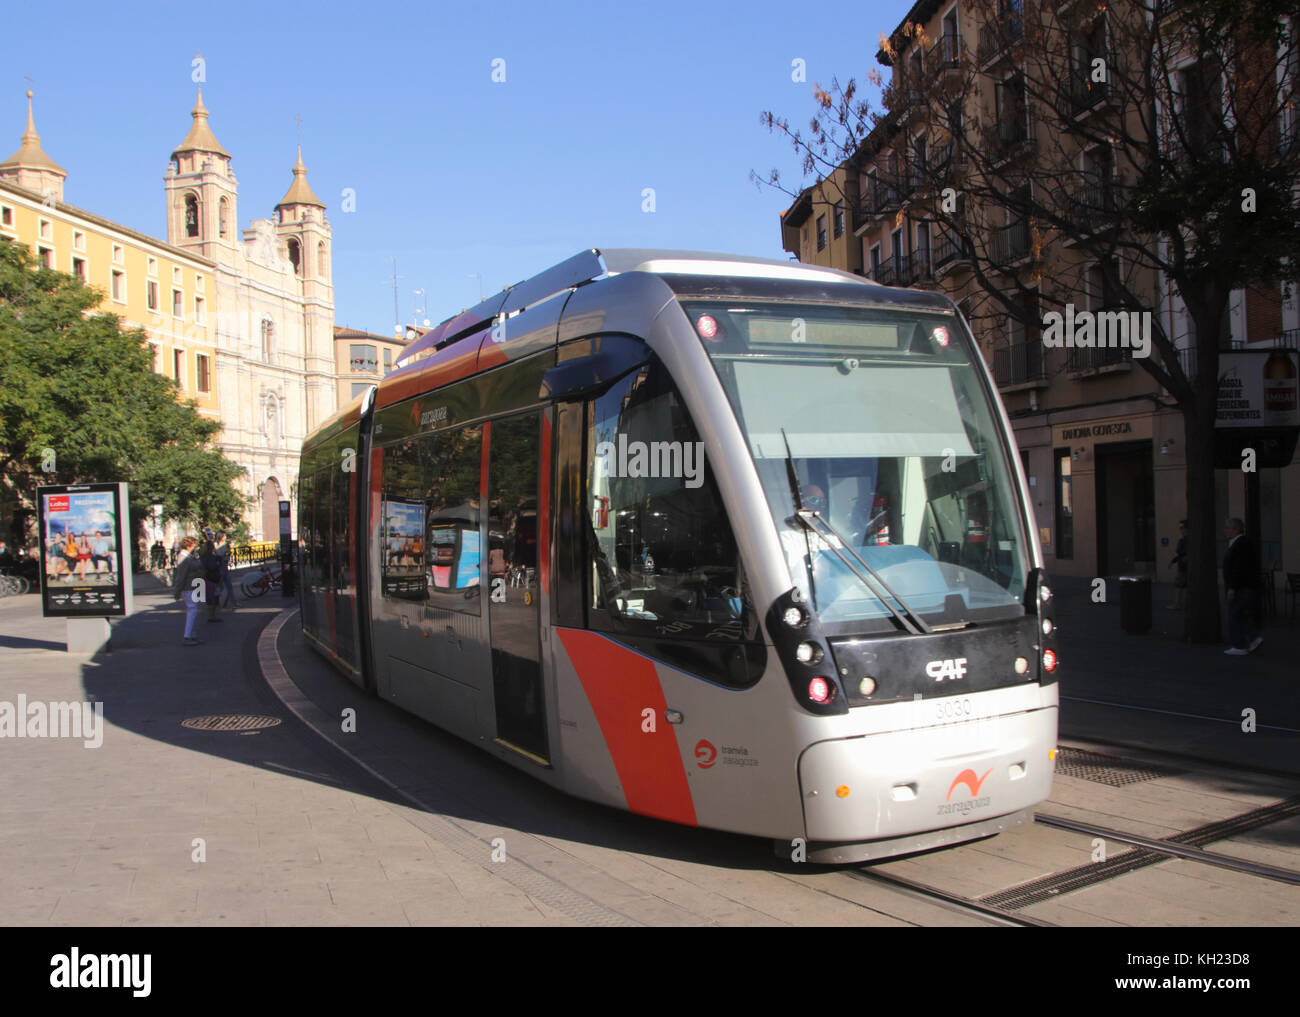 Tram in Avenida de Cesar Augusto Zaragoza Spain Stock Photo